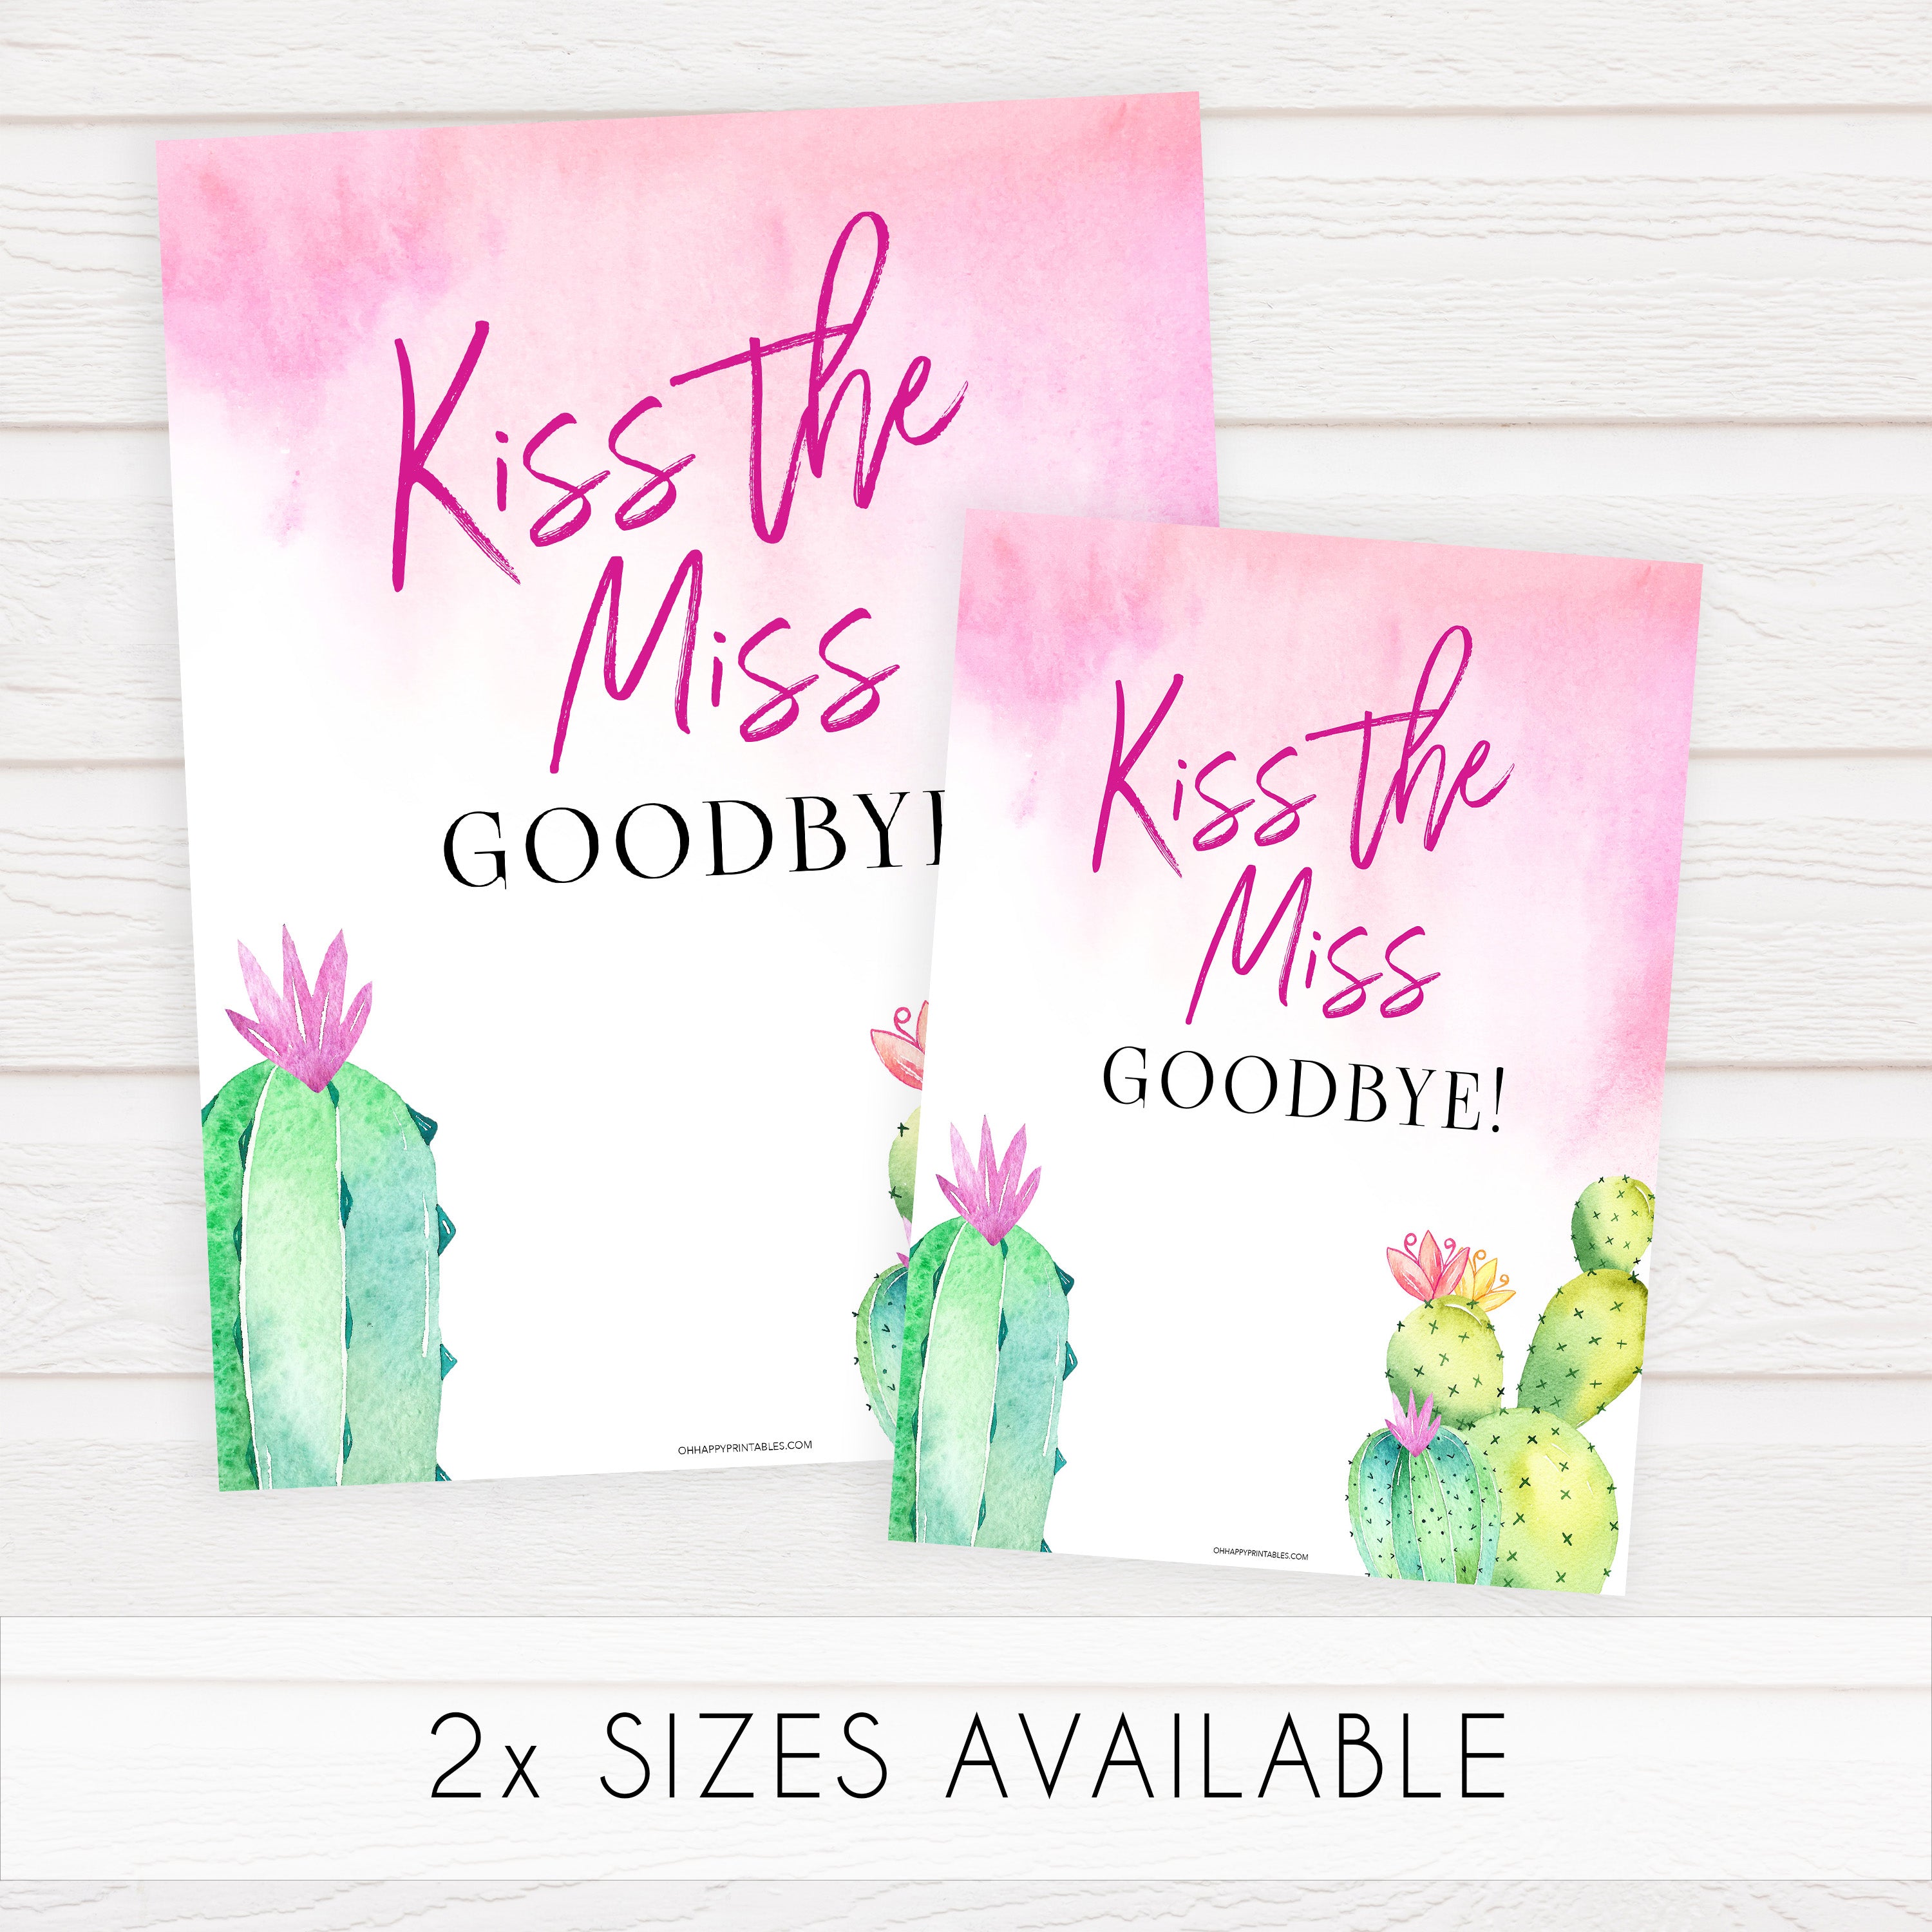 Kiss the Miss Goodbye Print - Fiesta